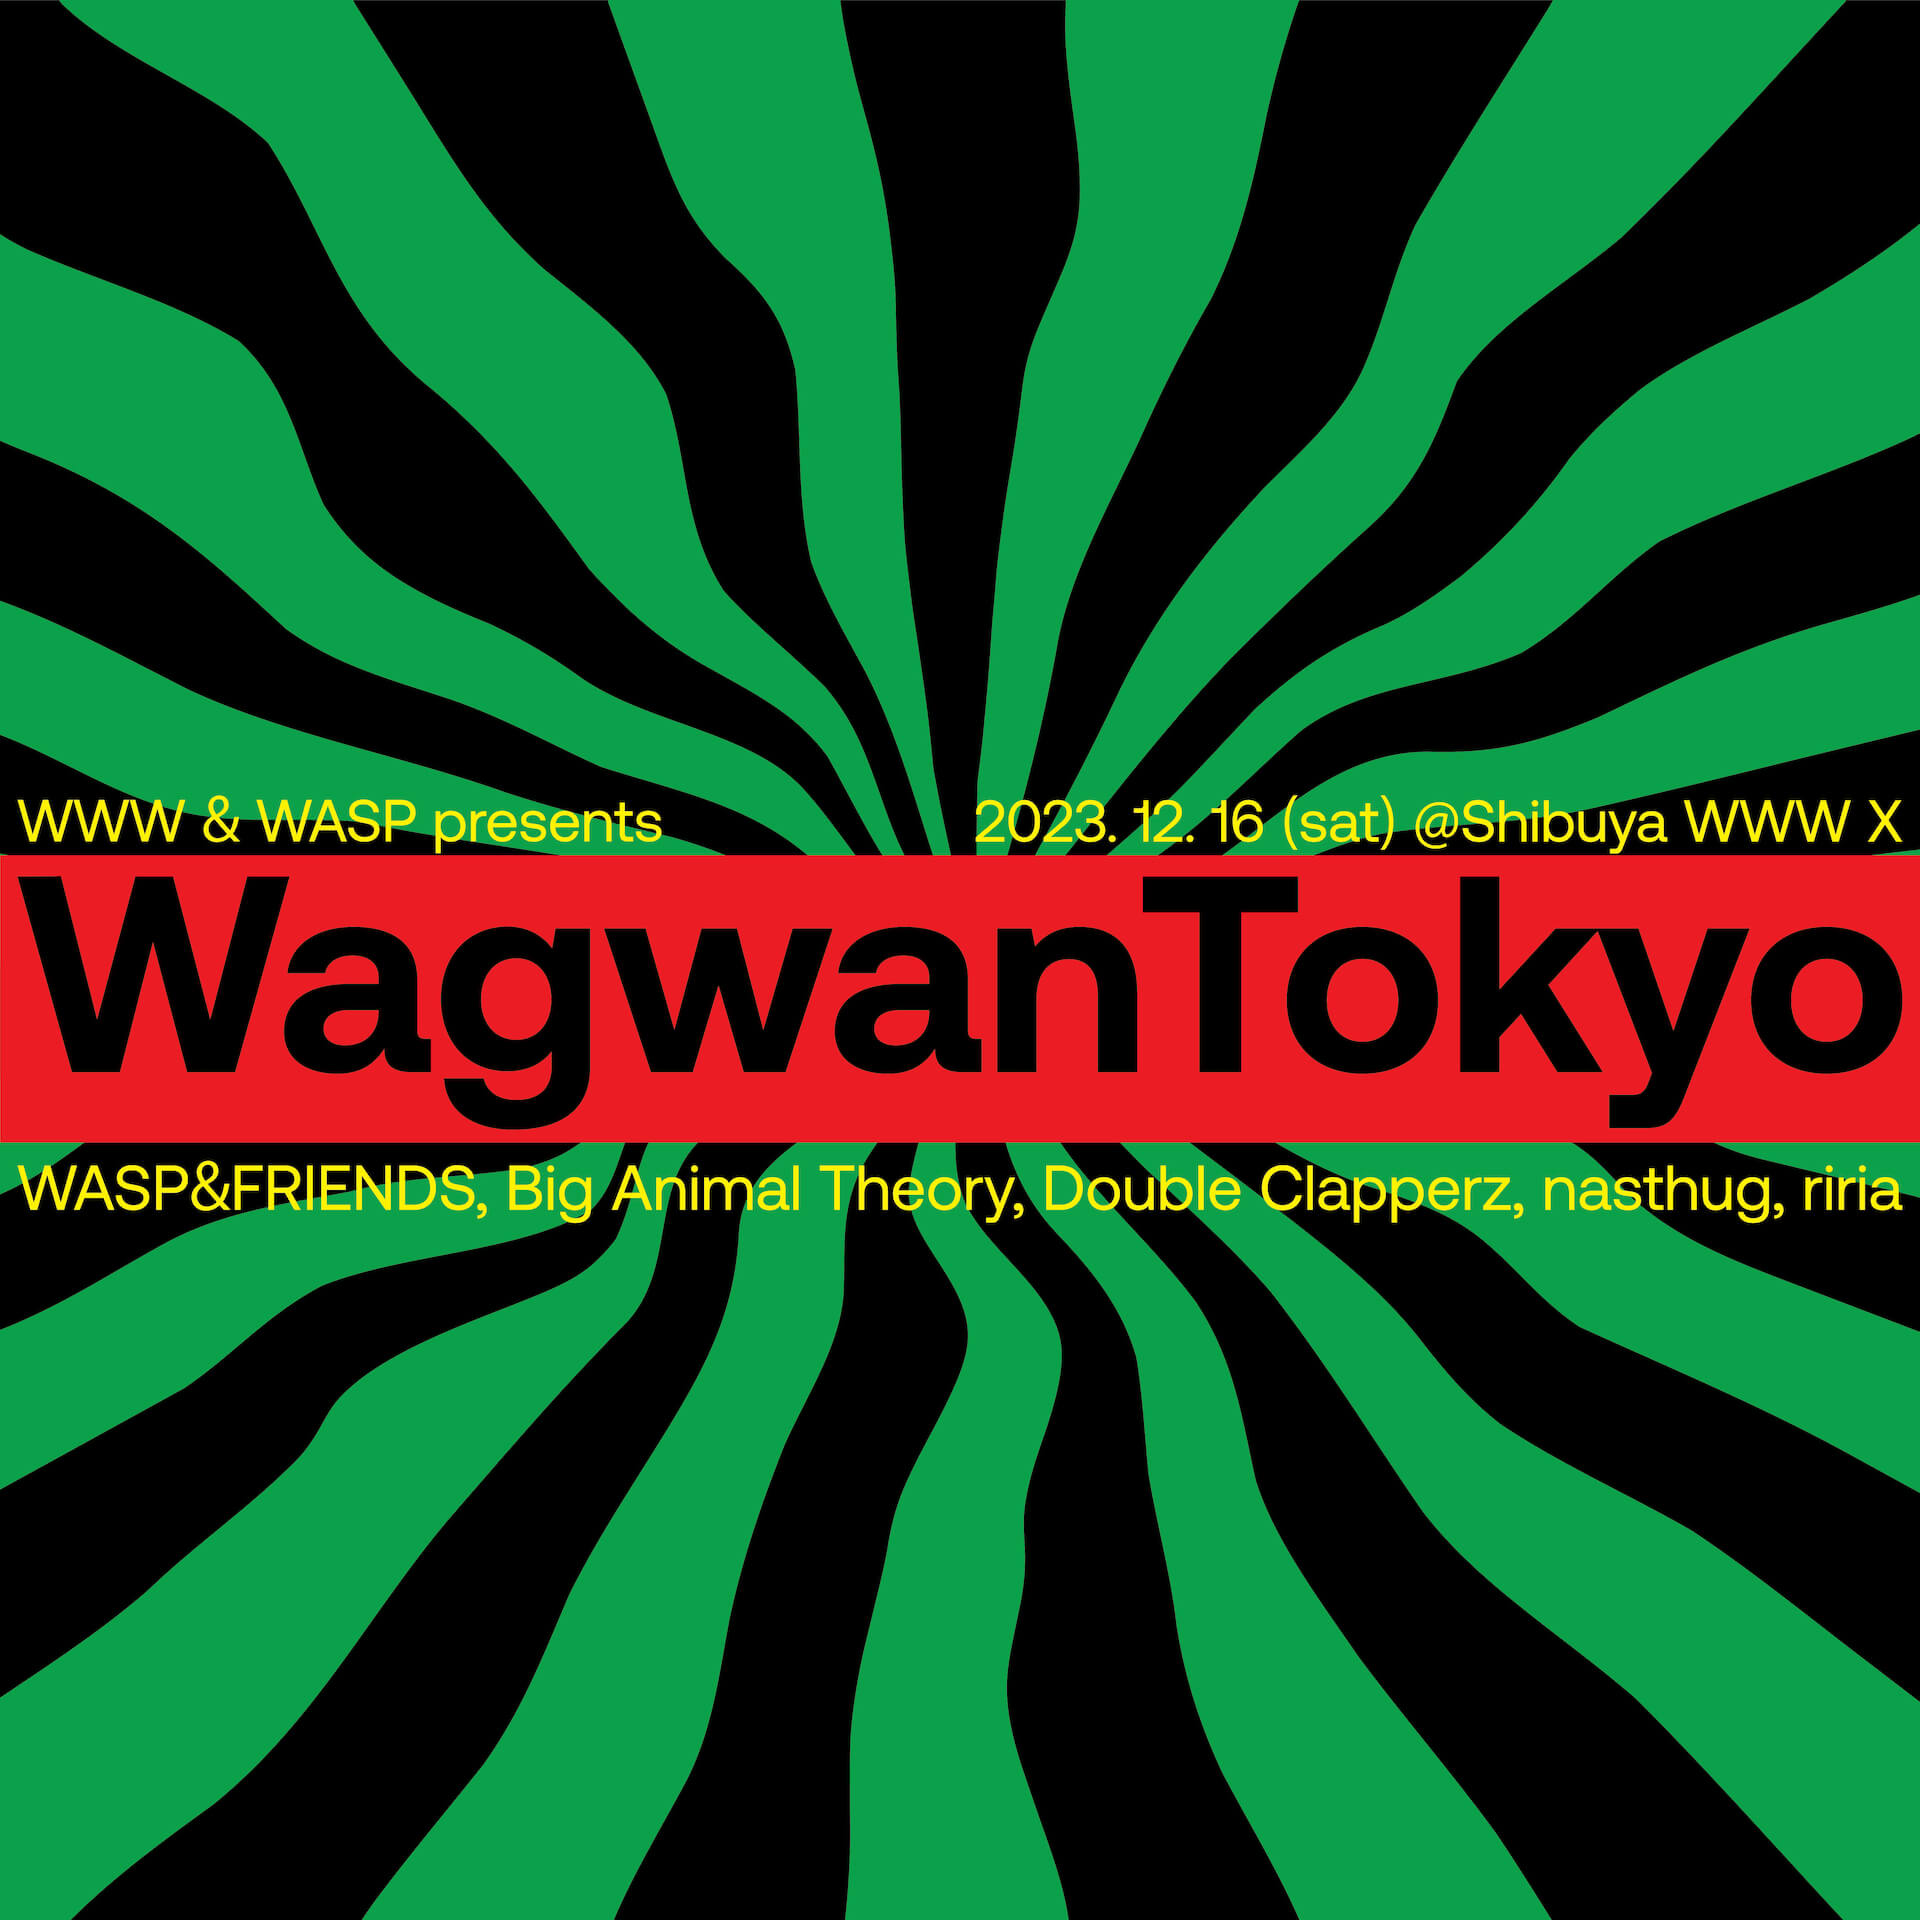 WWW & WASP presents WagwanTokyo